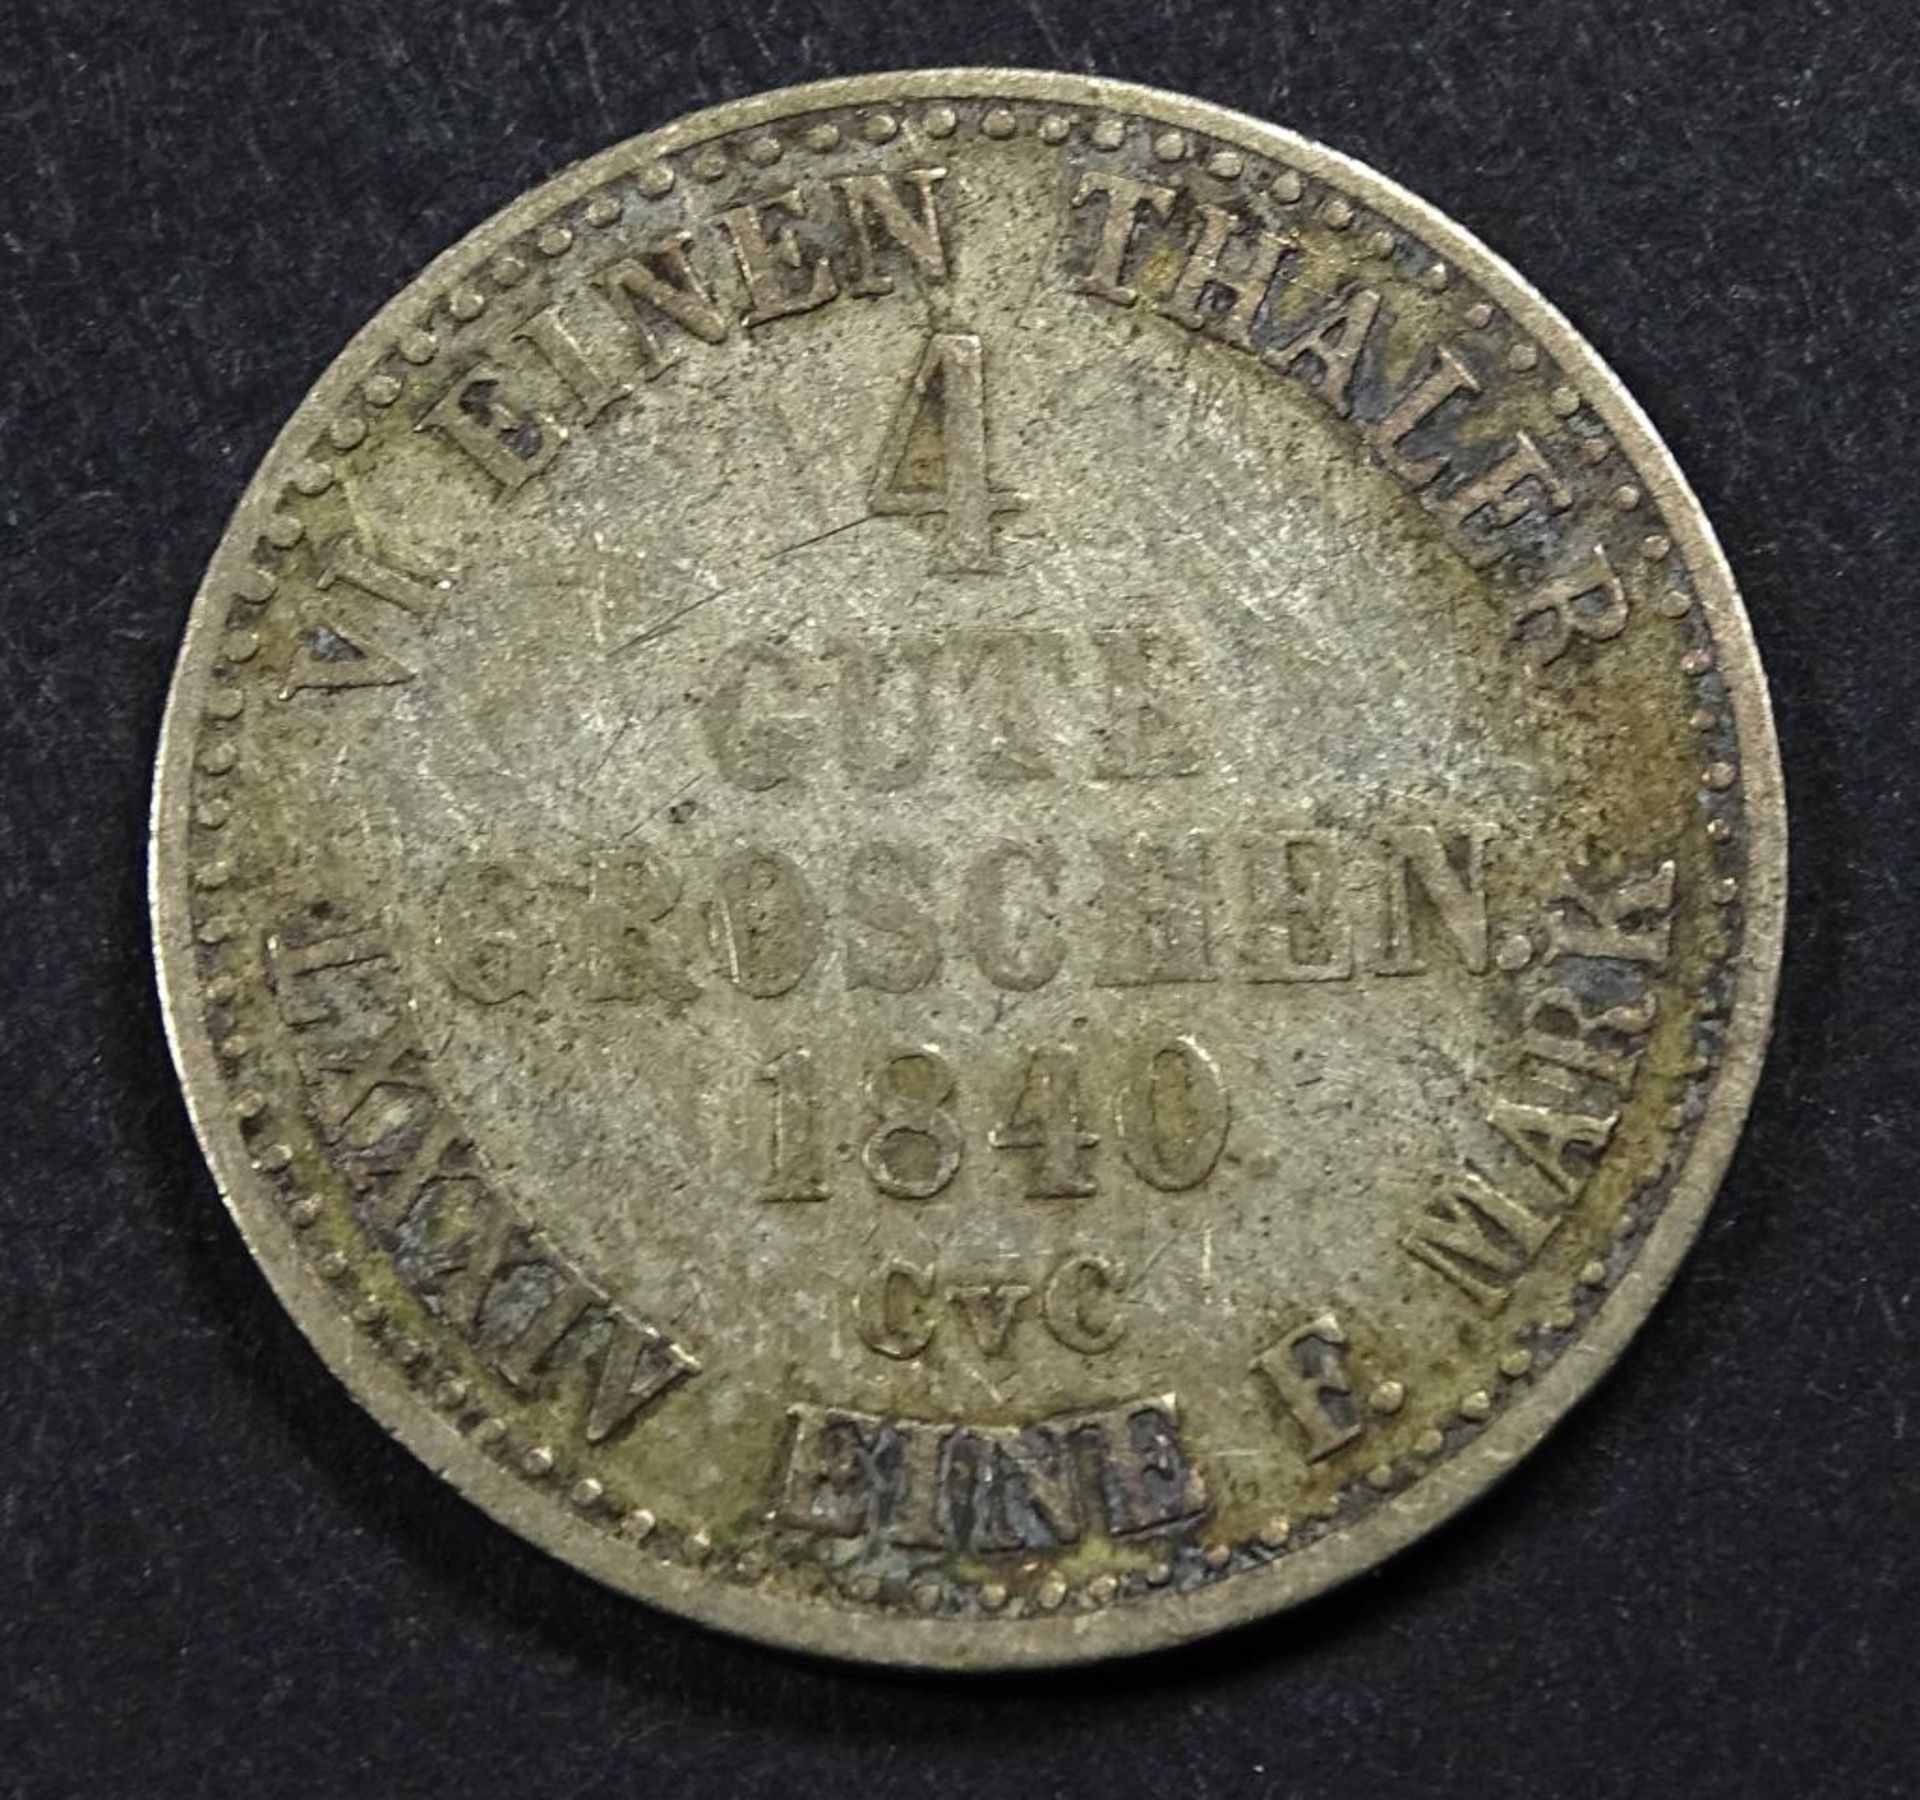 4 gute Groschen,1840, Braunschweig,s-ss,d-23mm